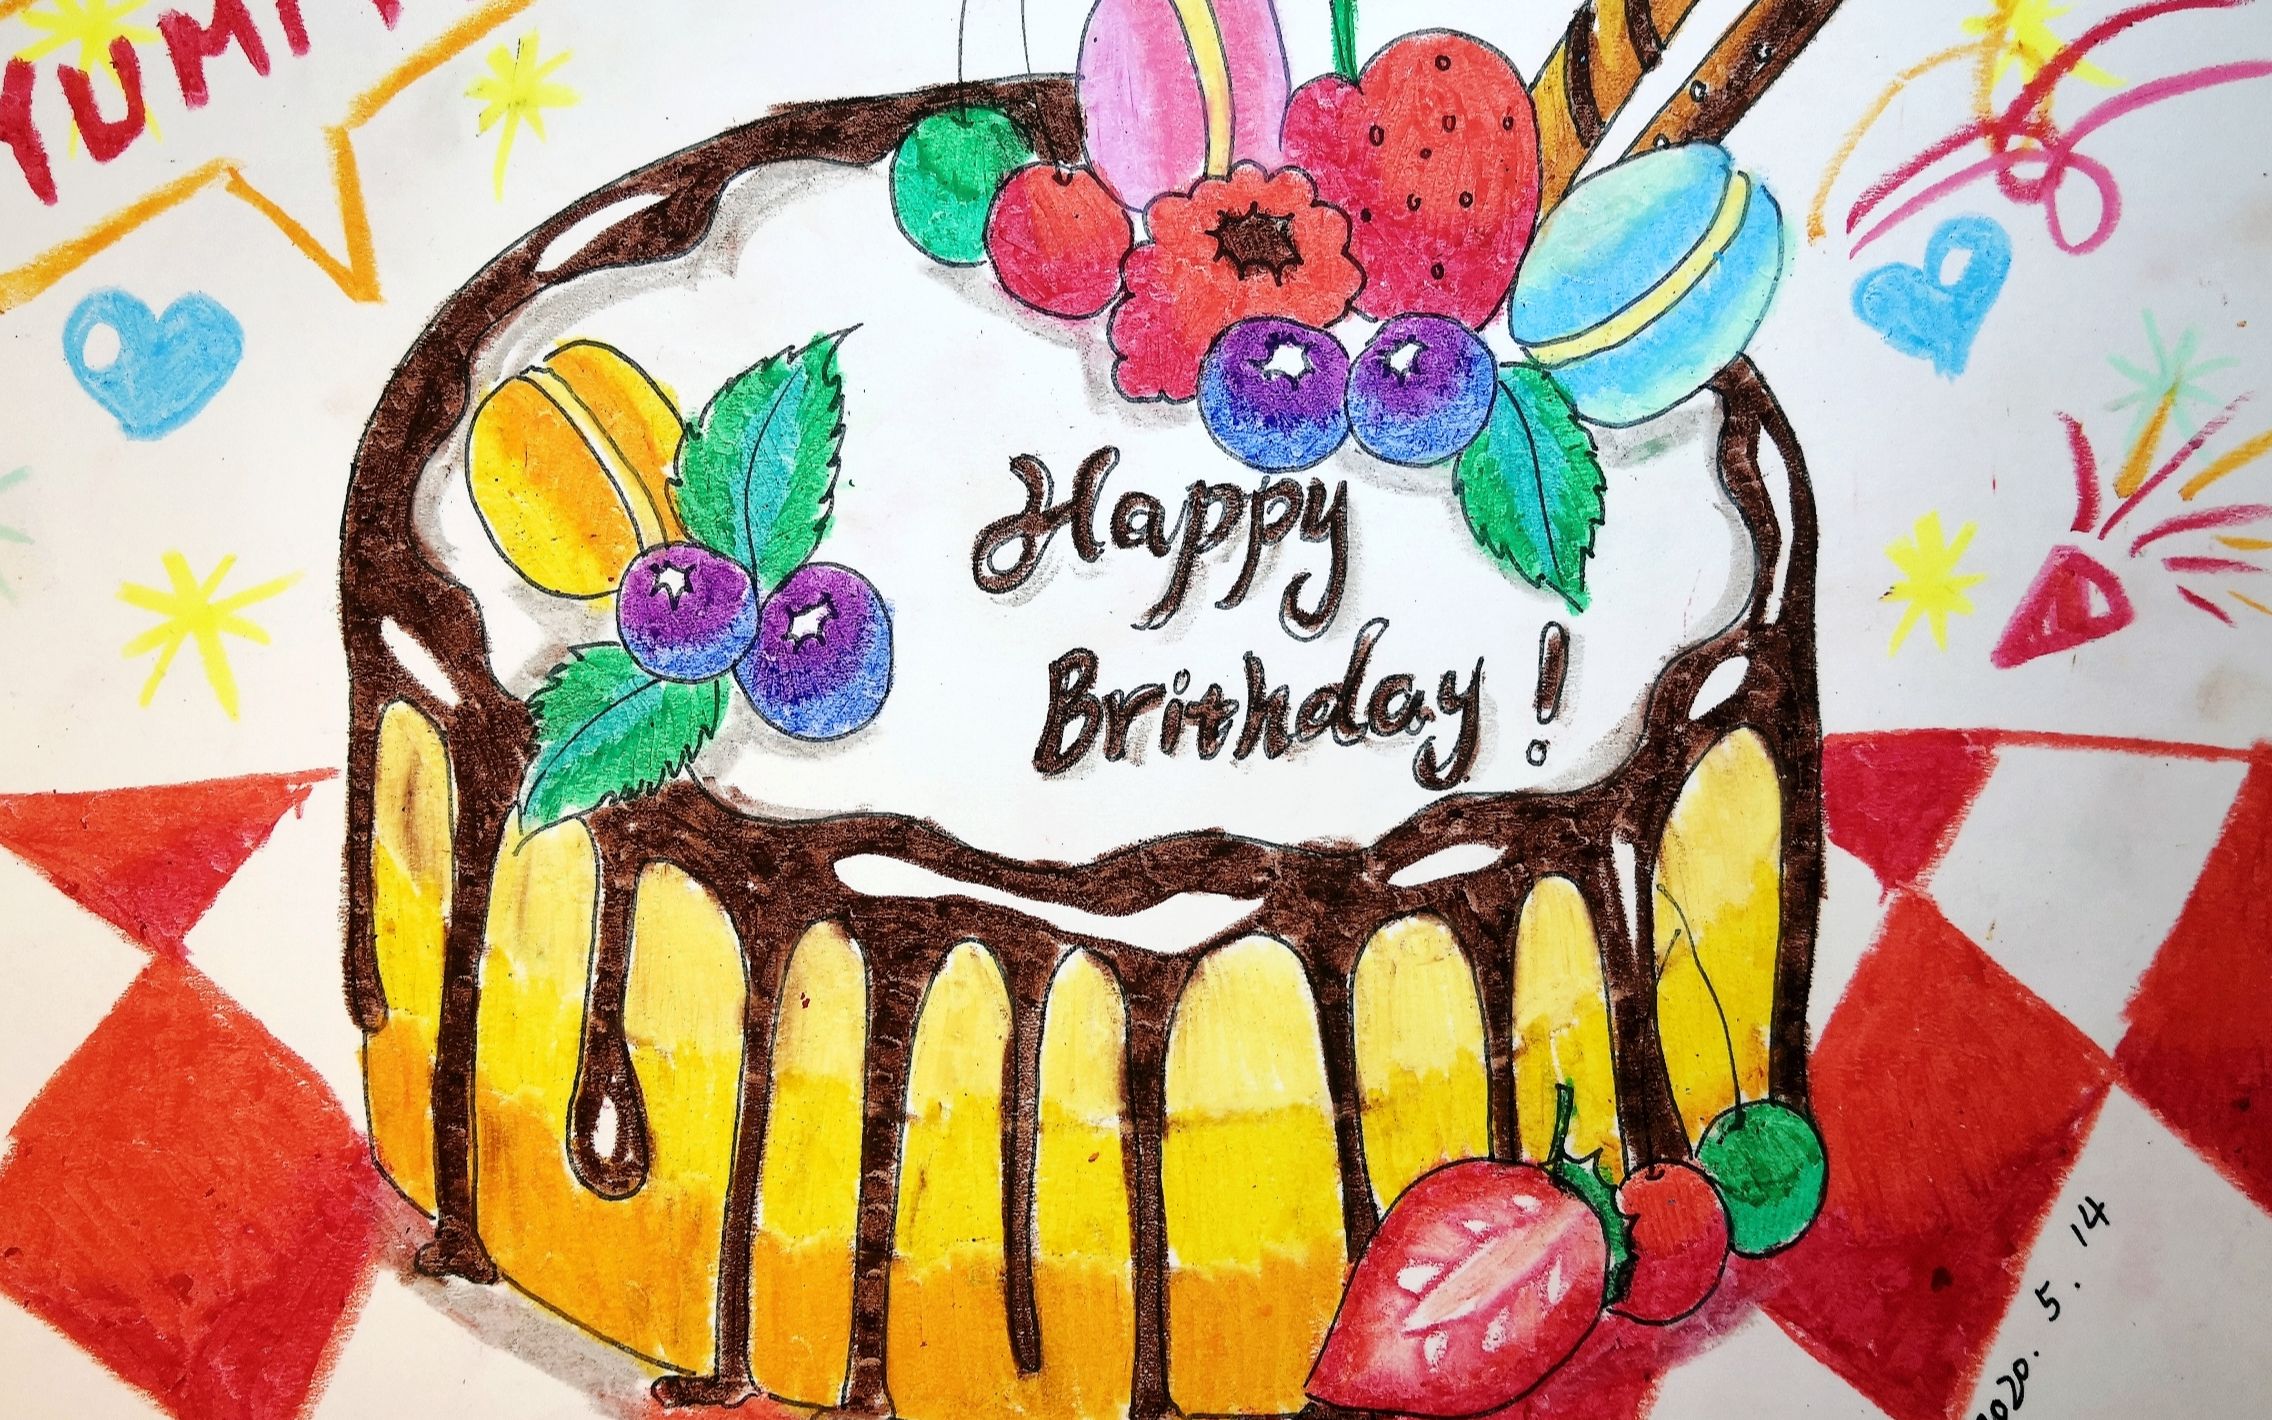 一幅生日蛋糕画图片